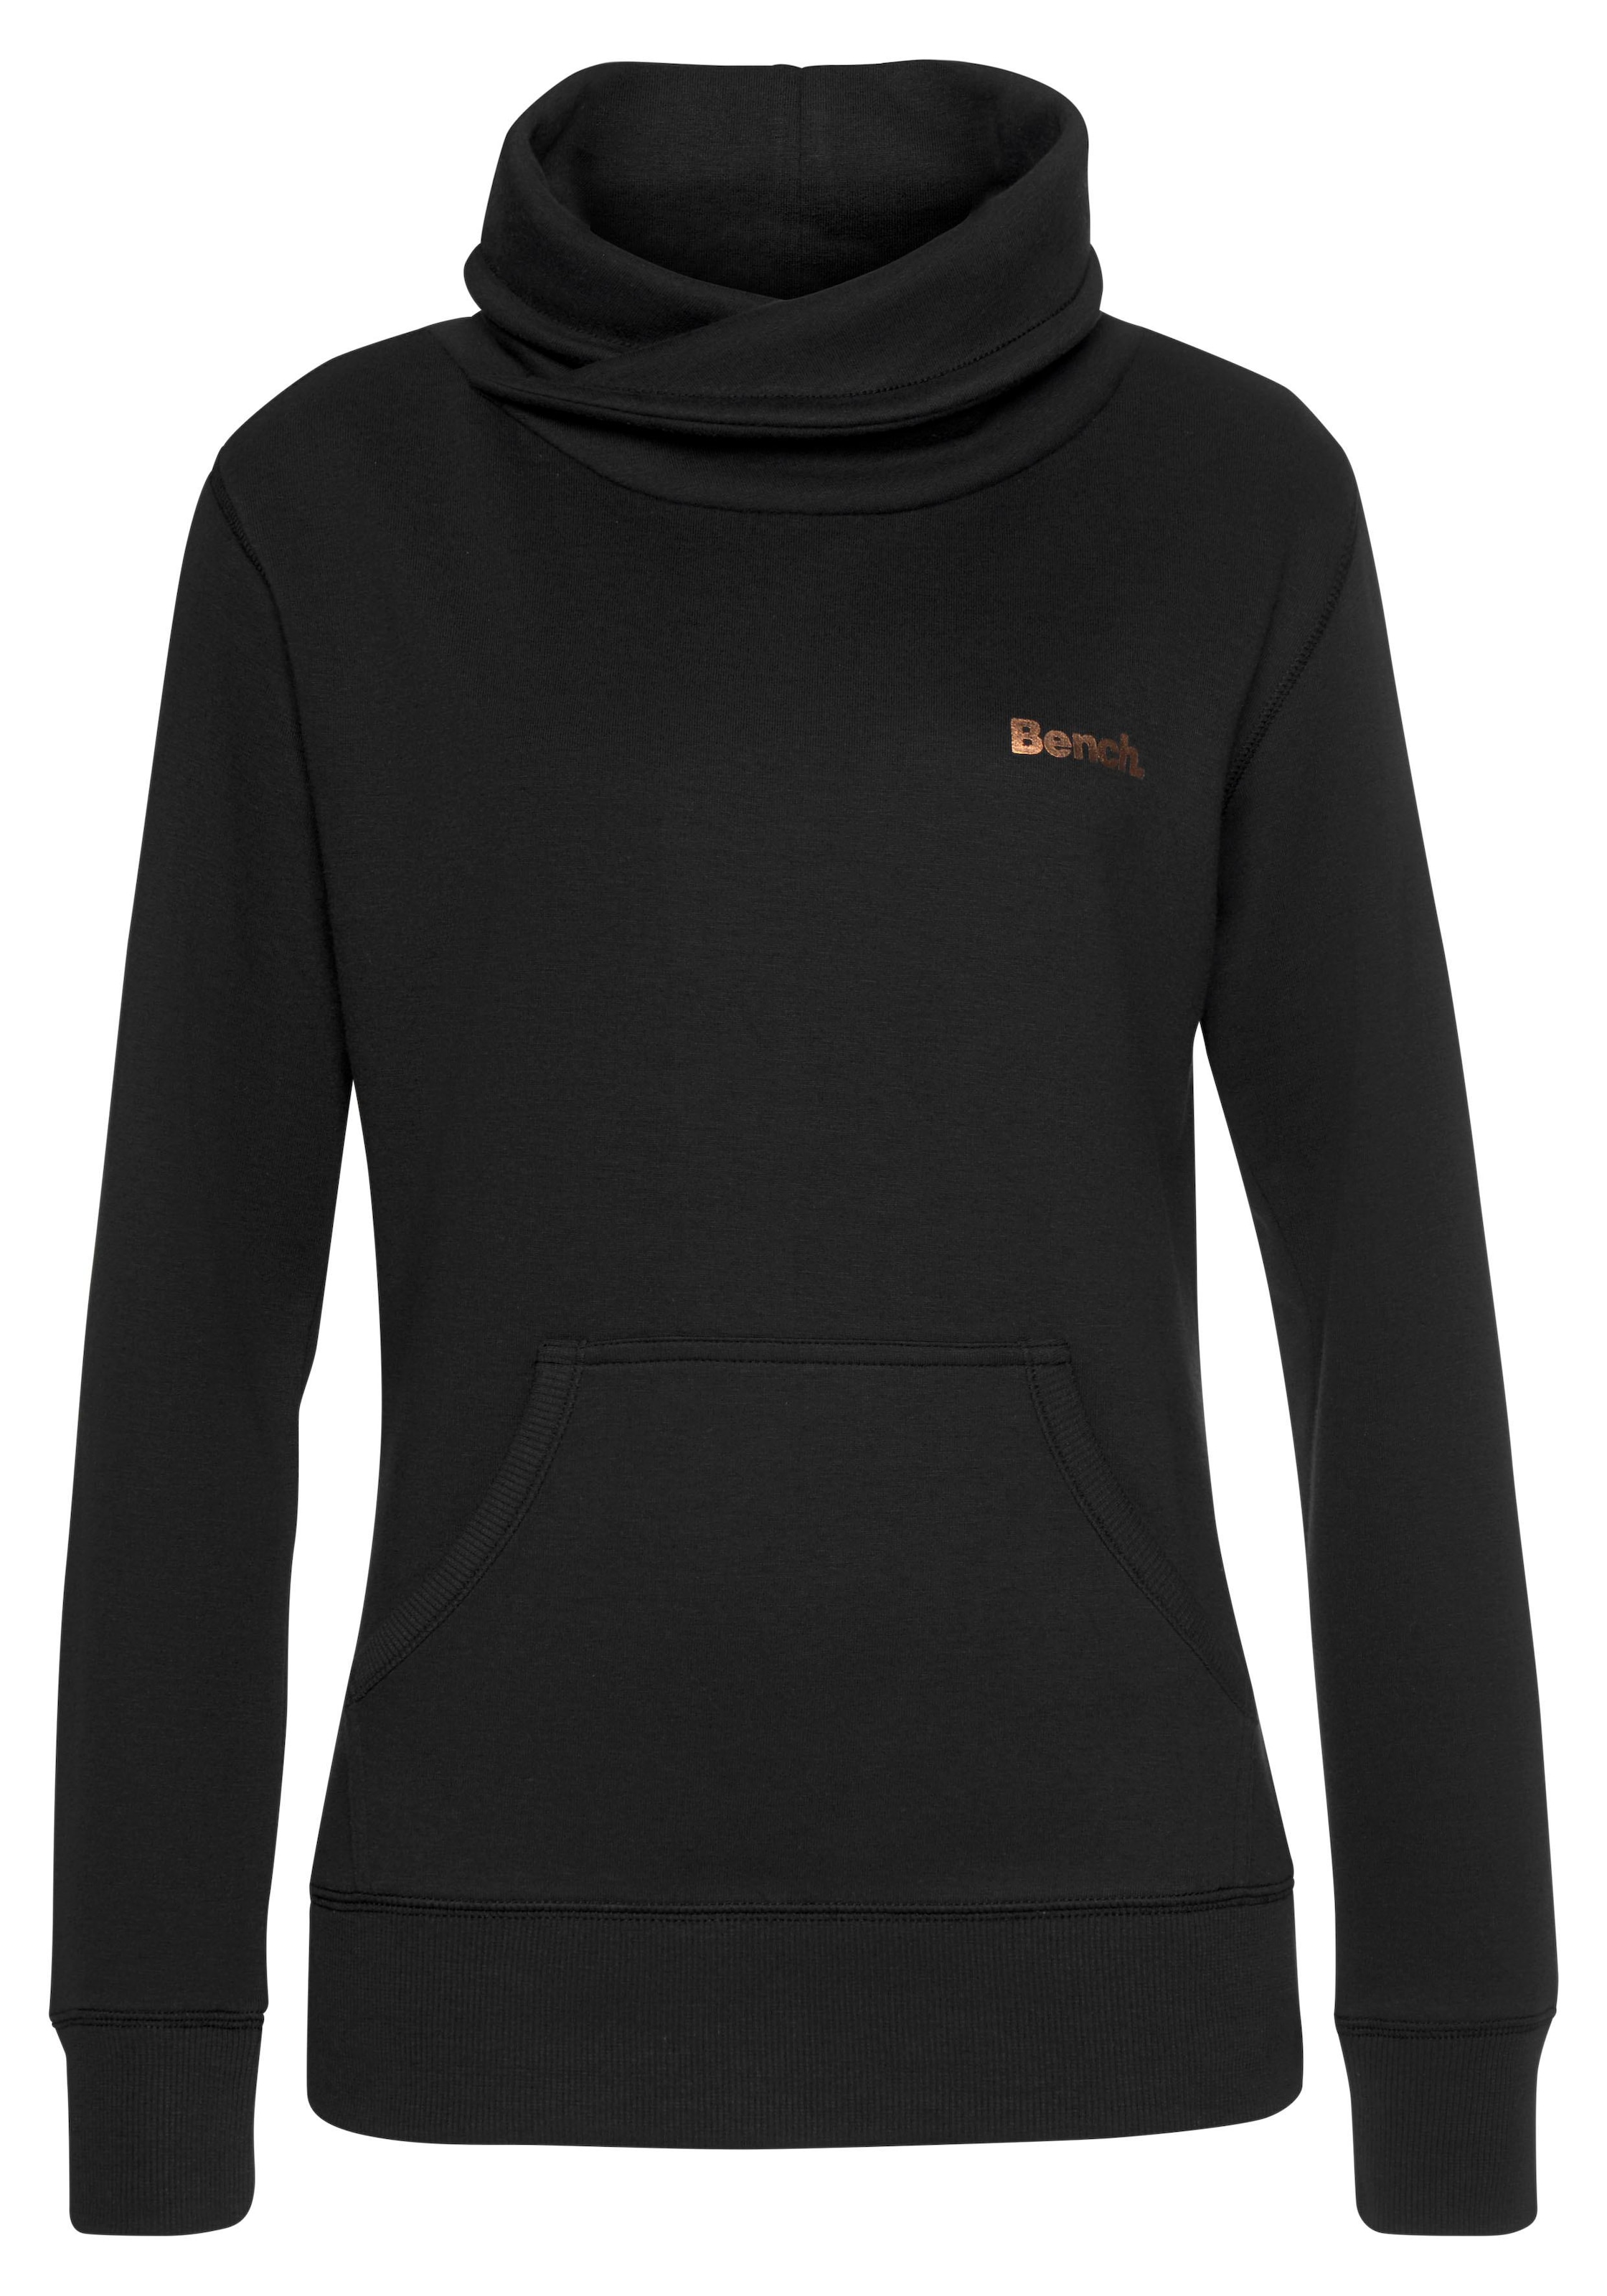 Bench. Sweatshirt mit Layeroptik | BAUR online kaufen